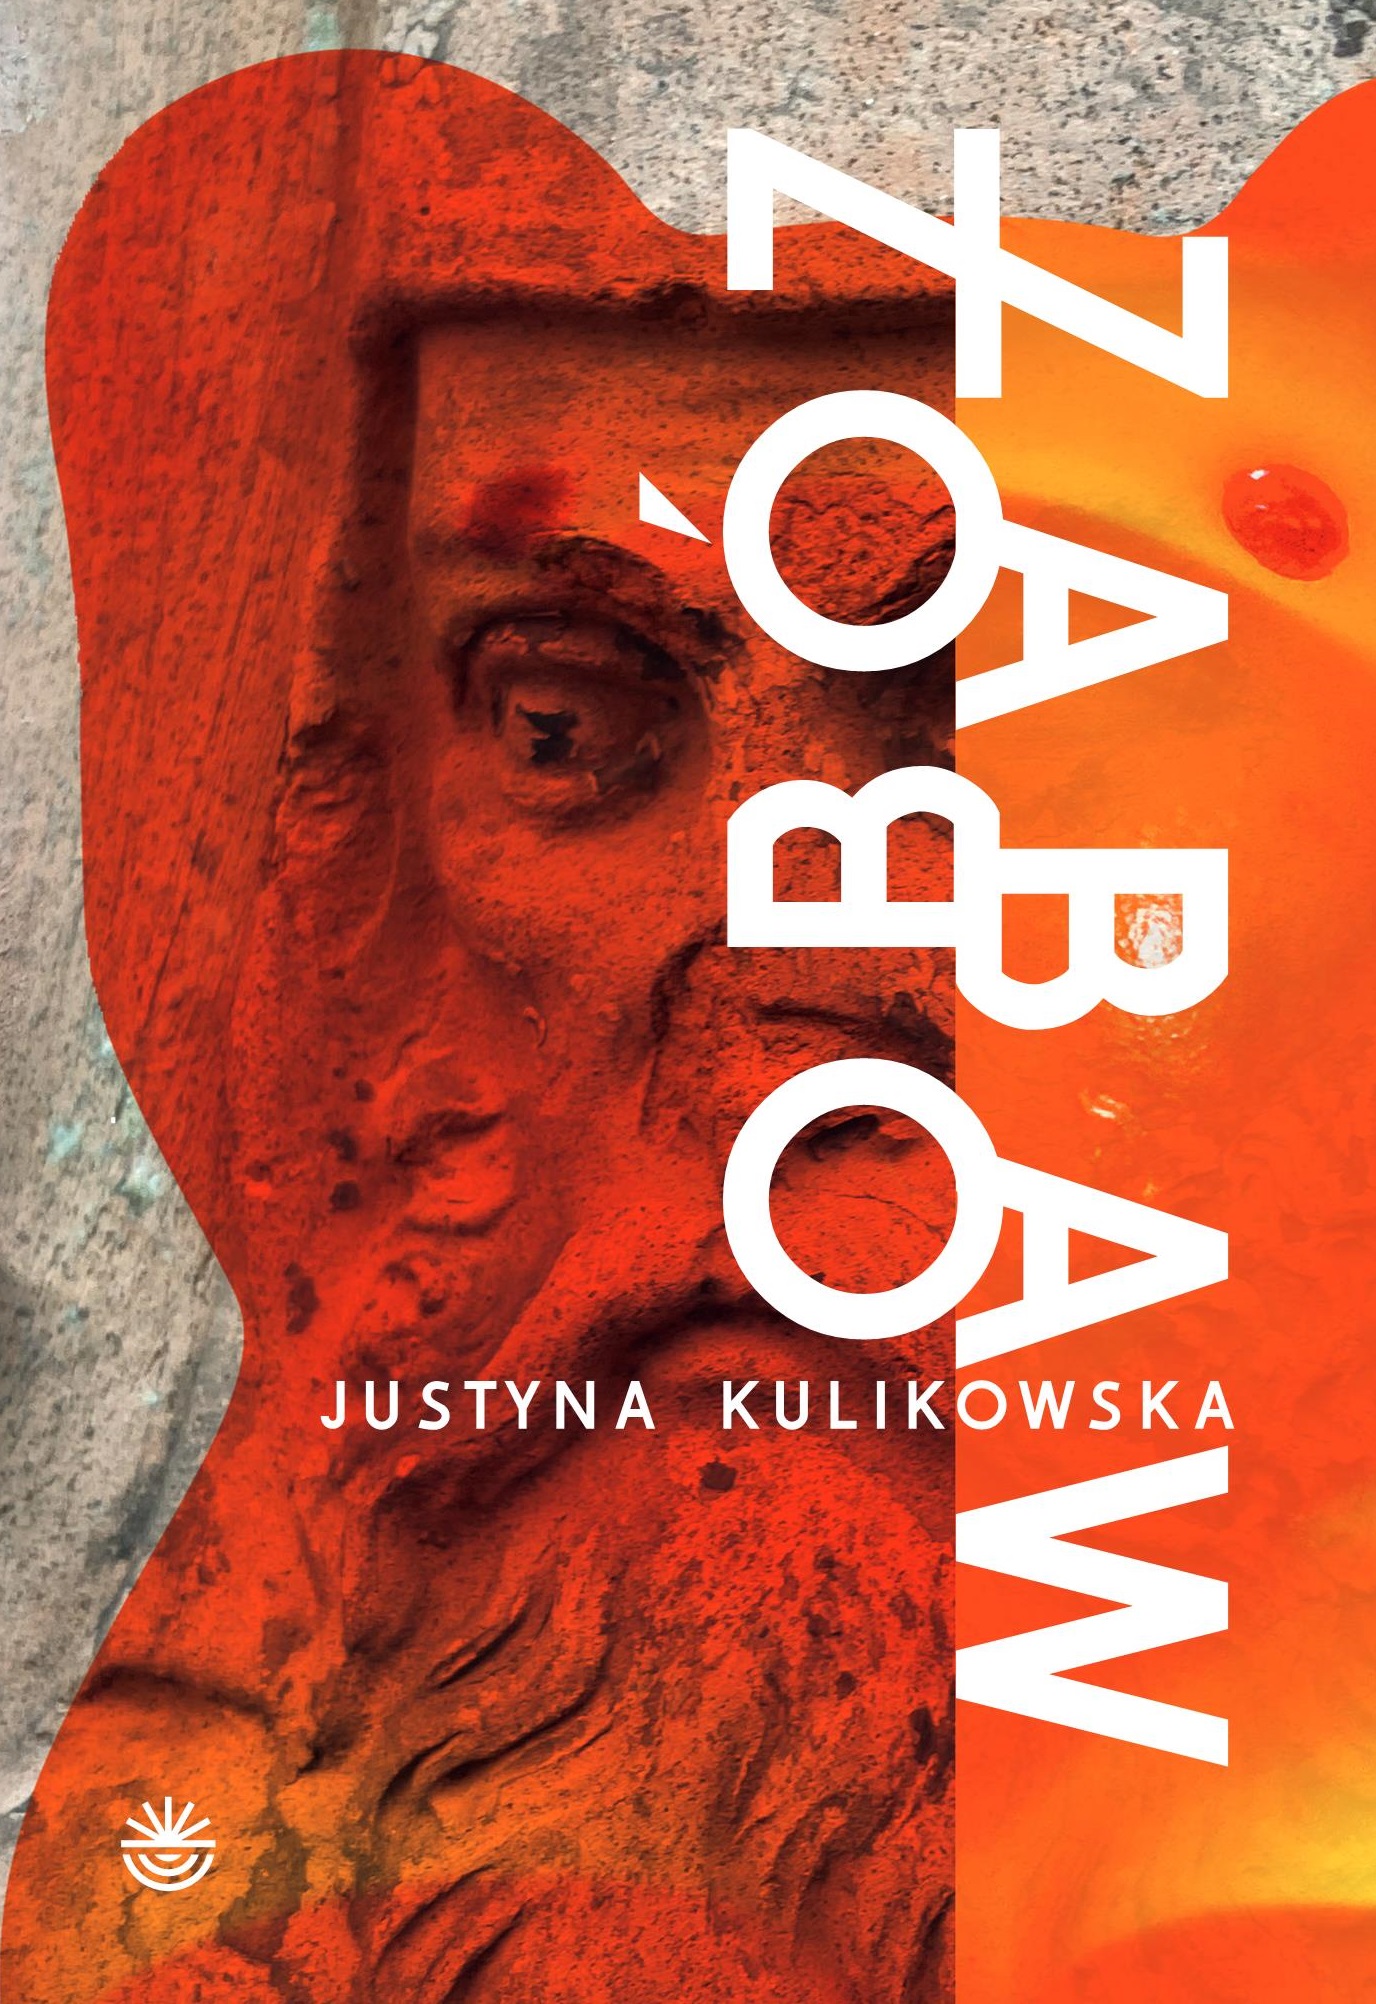 okładka książki Justyny Kulikowskiej pt. Obóz zabaw; na okładce widoczna płaskorzeźba przedstawiająca ludzką twarz z brodą